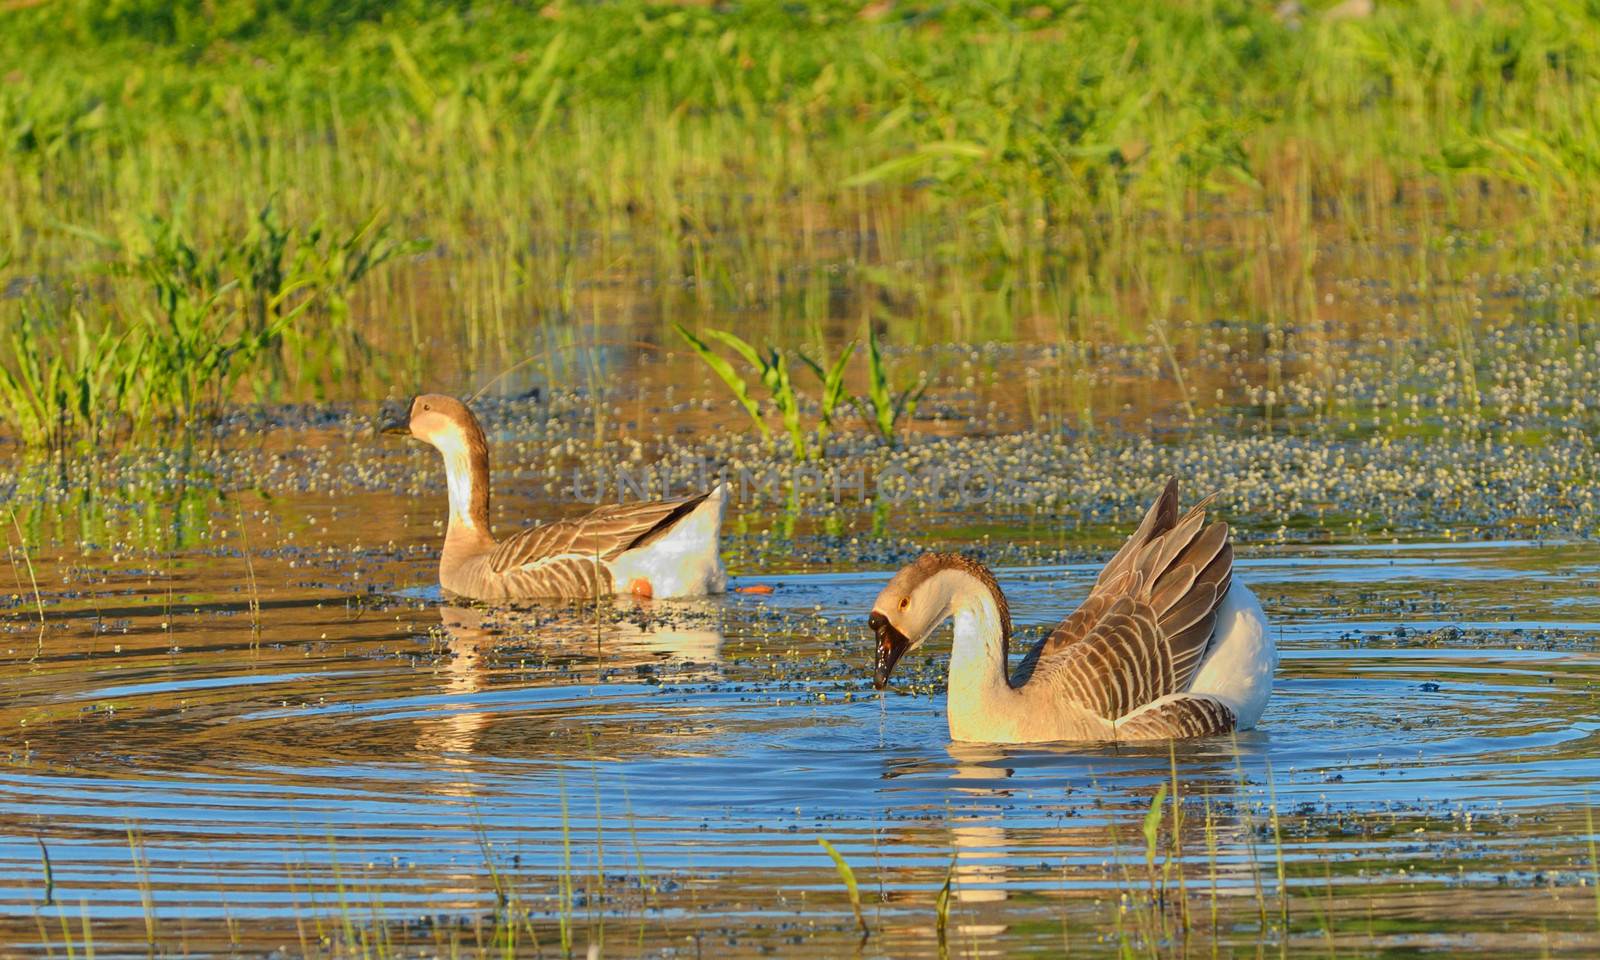 two wild ducks swim in the river